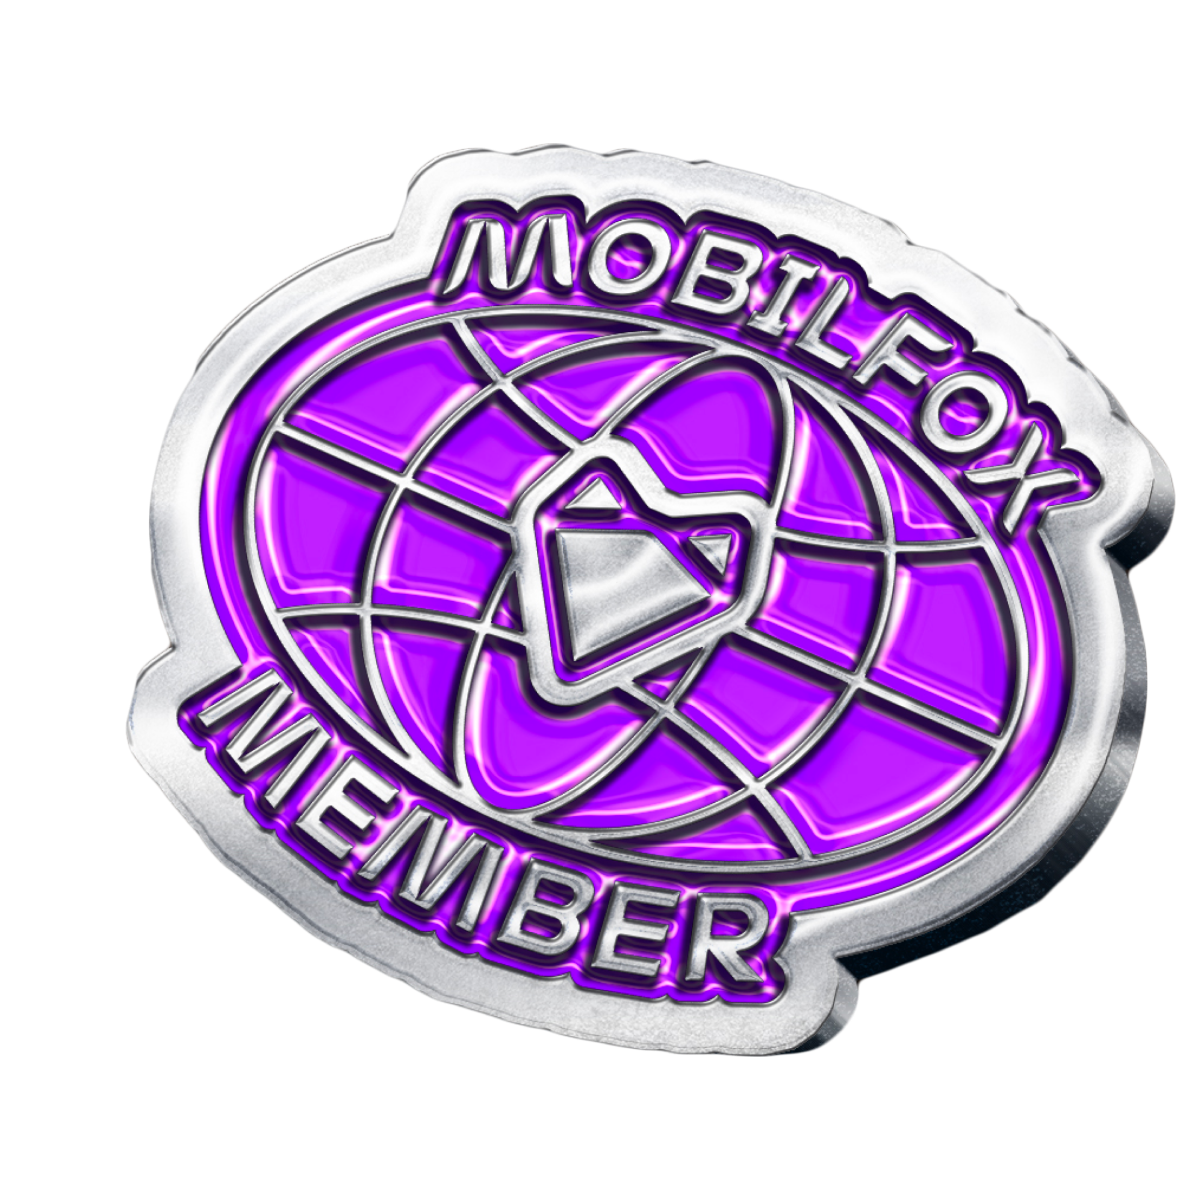 Member Badge